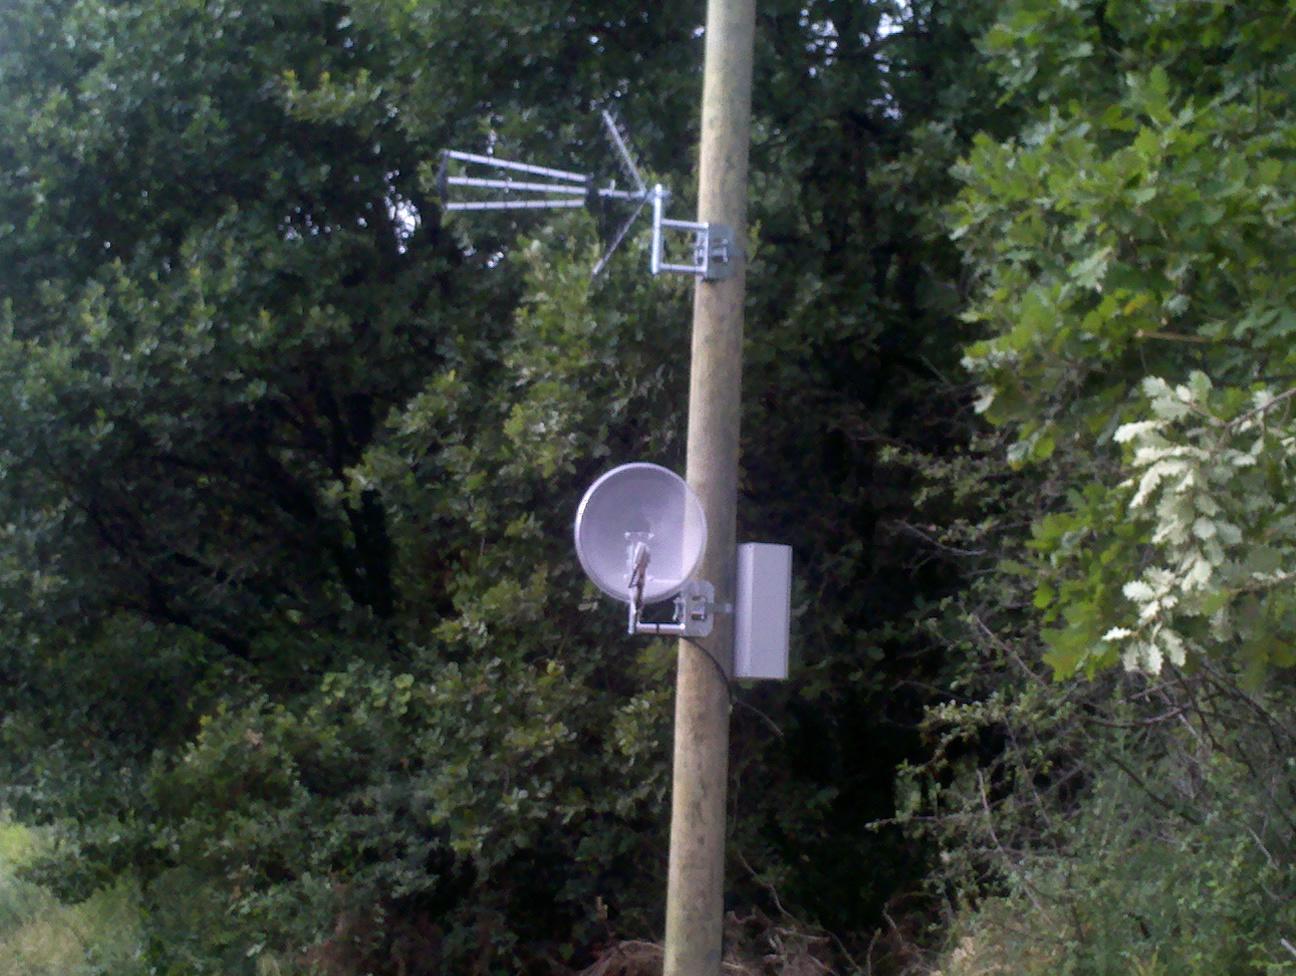 La parabole et l'antenne sont situées à 150 m de la maison avec liaison par fibre optique